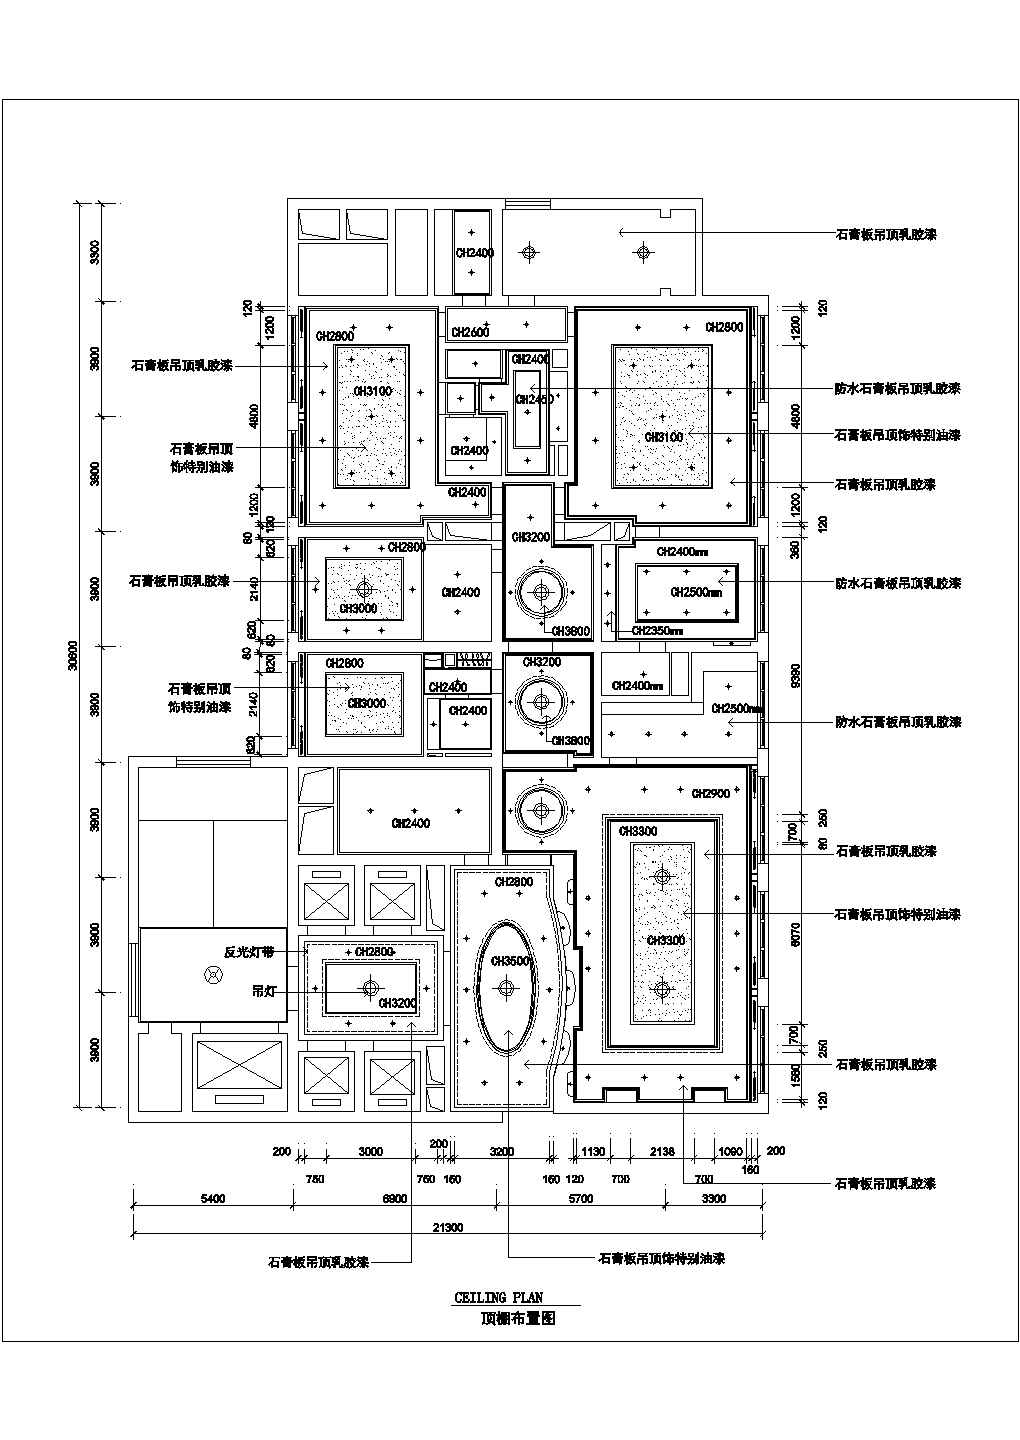 南京某星级酒店总统套房全套装修施工设计cad详图(含顶棚布置图)